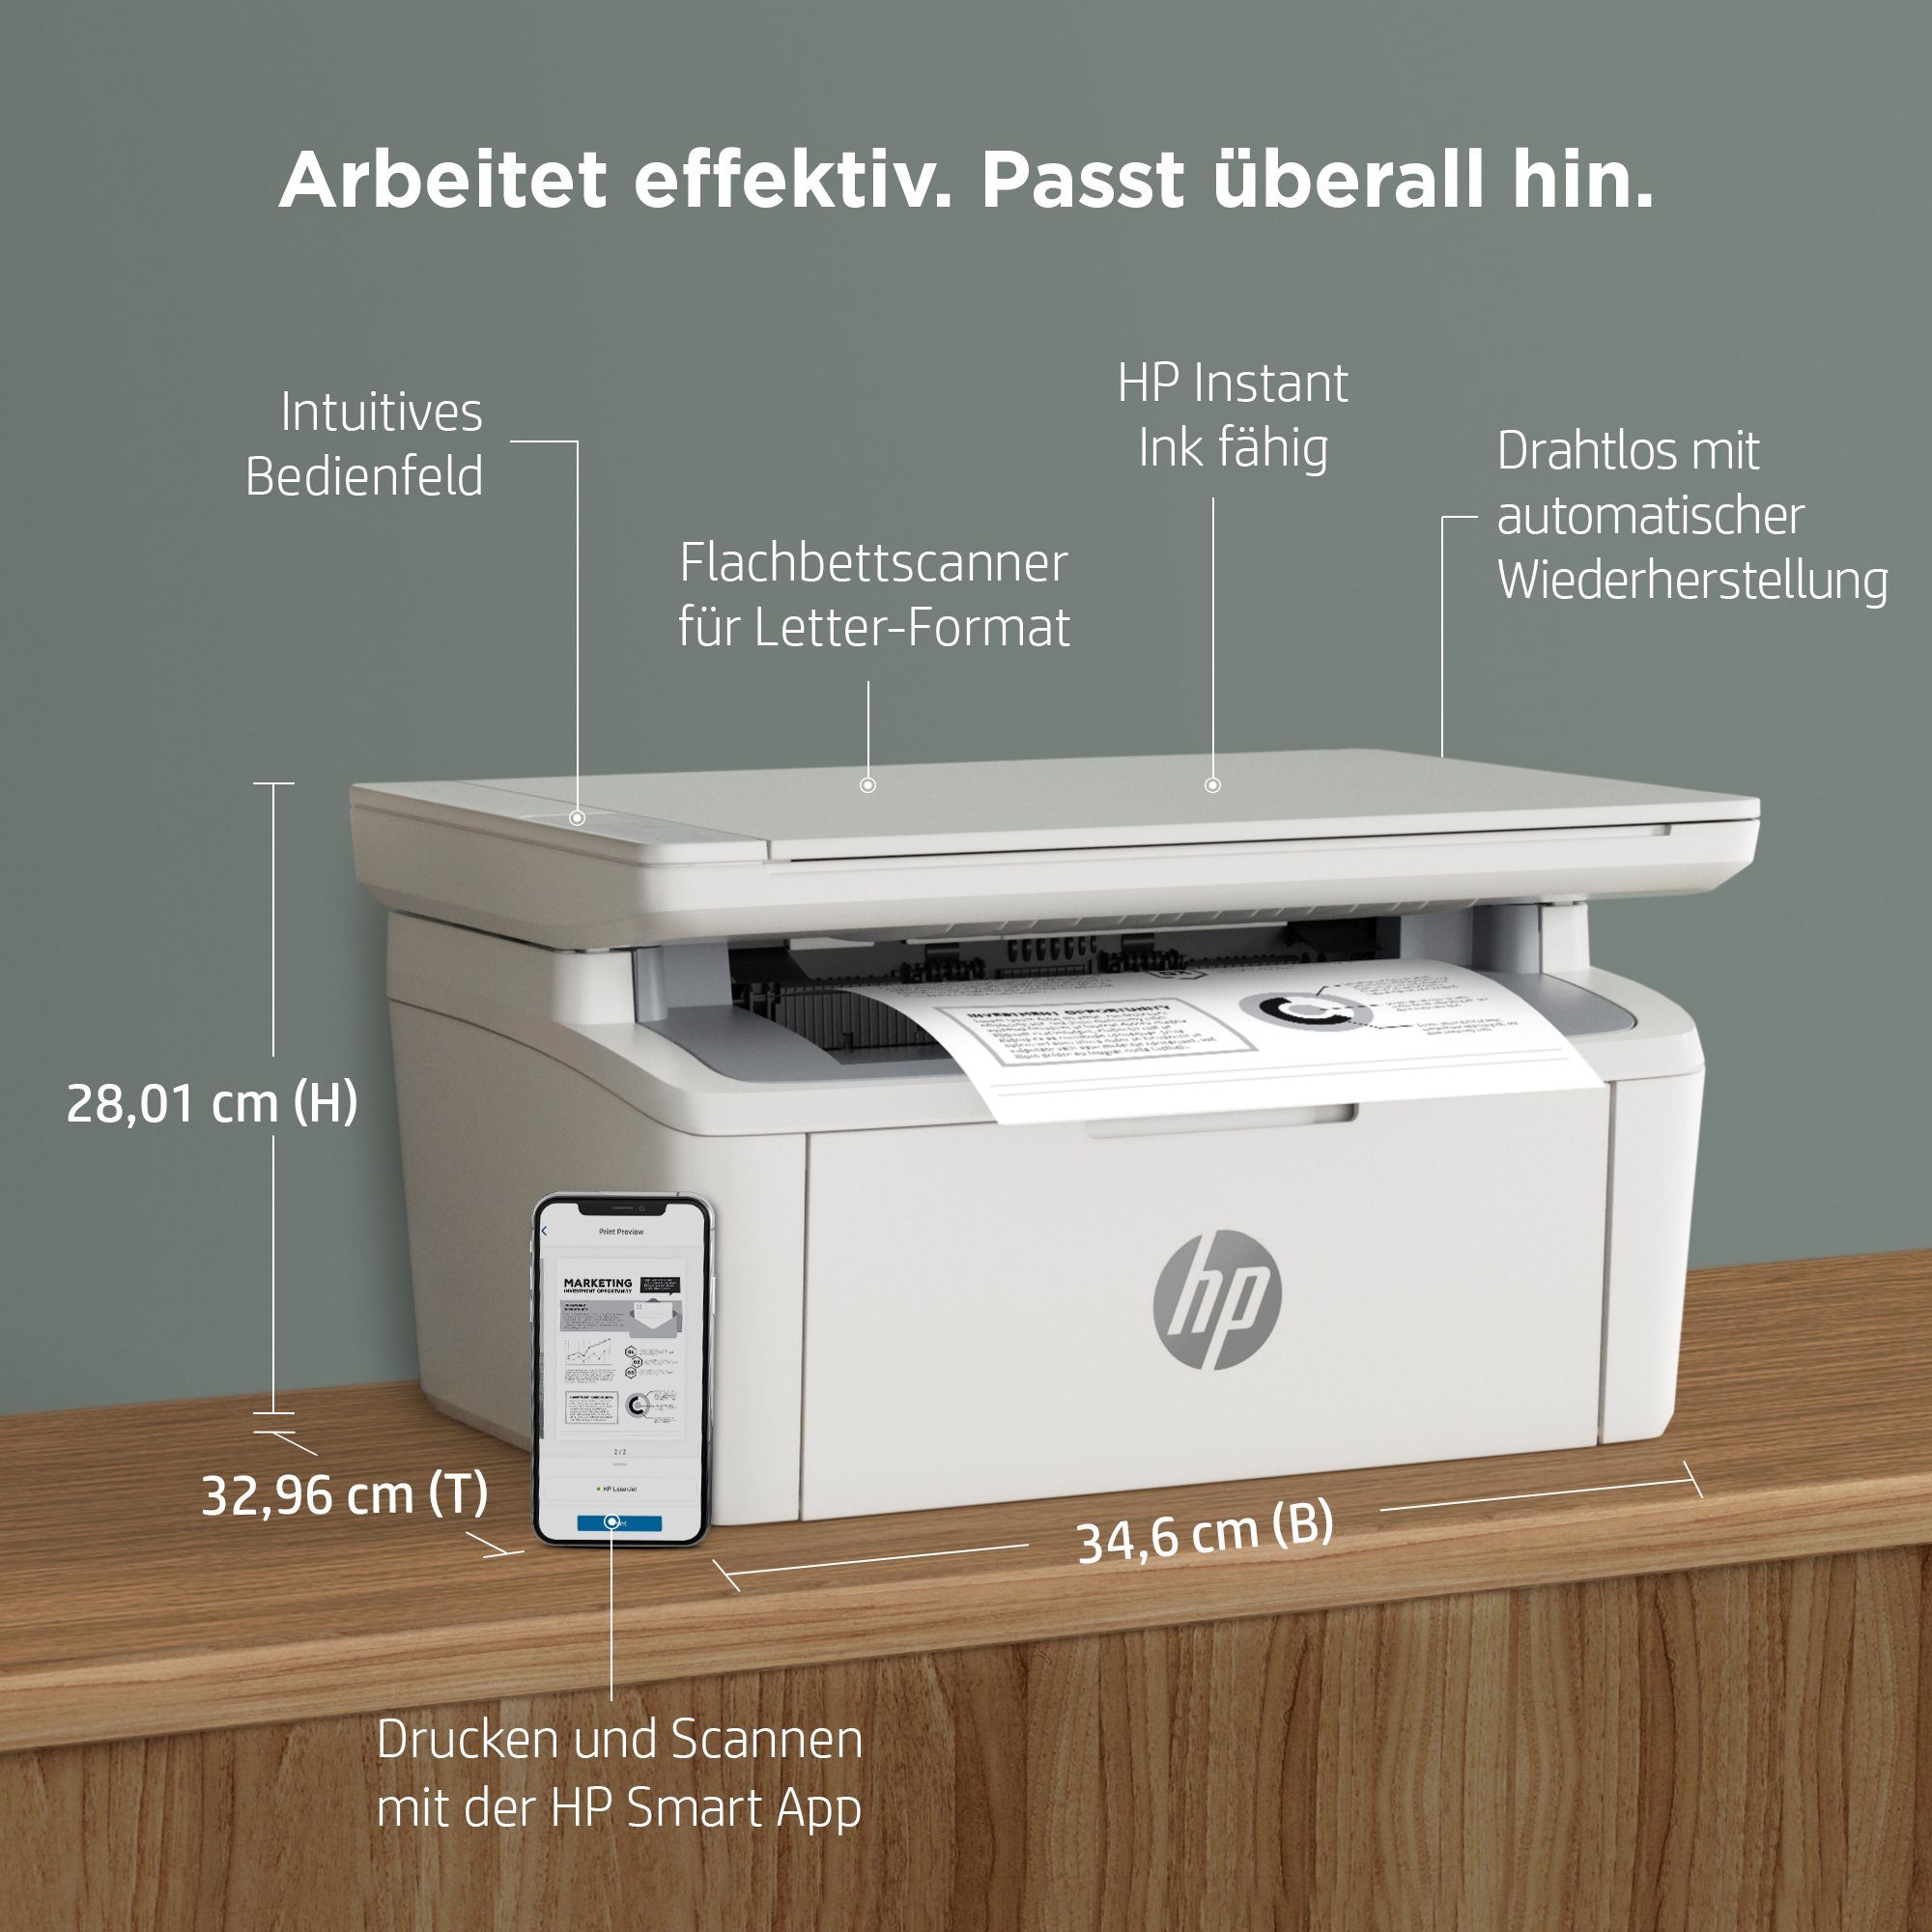 HP LaserJet MFP HP+ (Bluetooth, Ink Instant M140w kompatibel) Drucker WLAN Multifunktionsdrucker, (Wi-Fi)